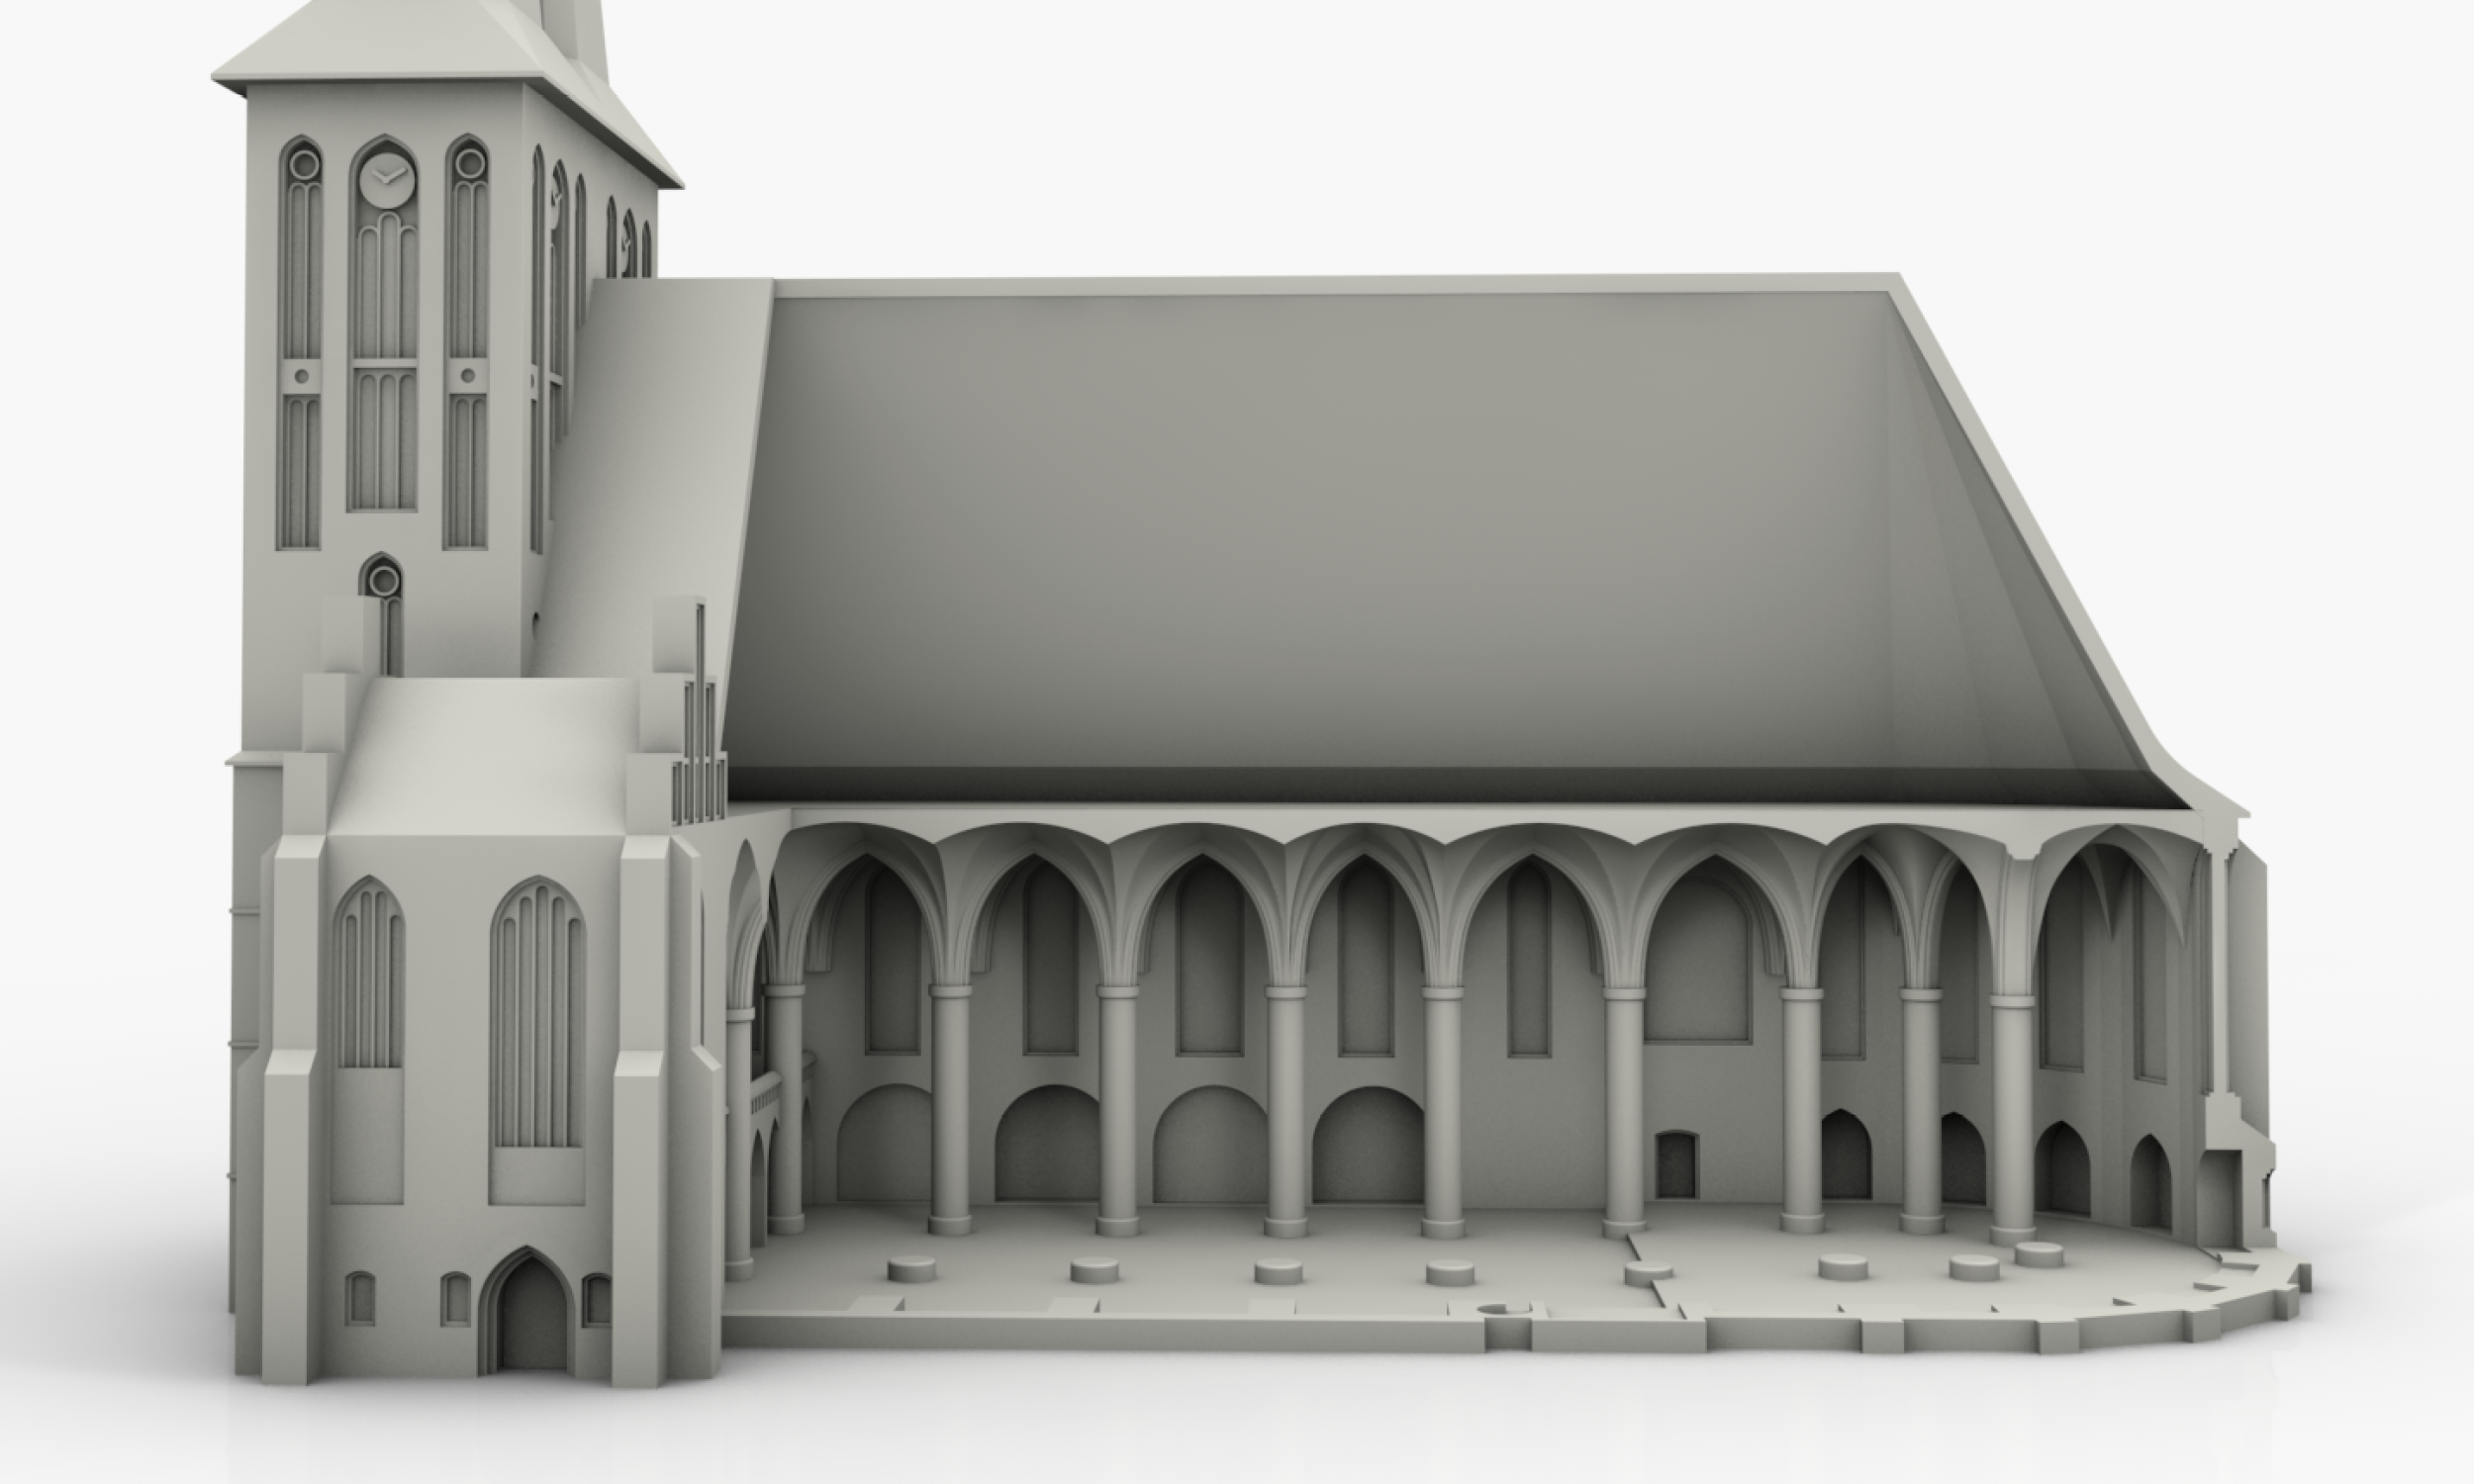 Diese Grafik zeigt das Gesamtmodell mit dem aufgeschnittenen Innenraum der Nikolaikirche.